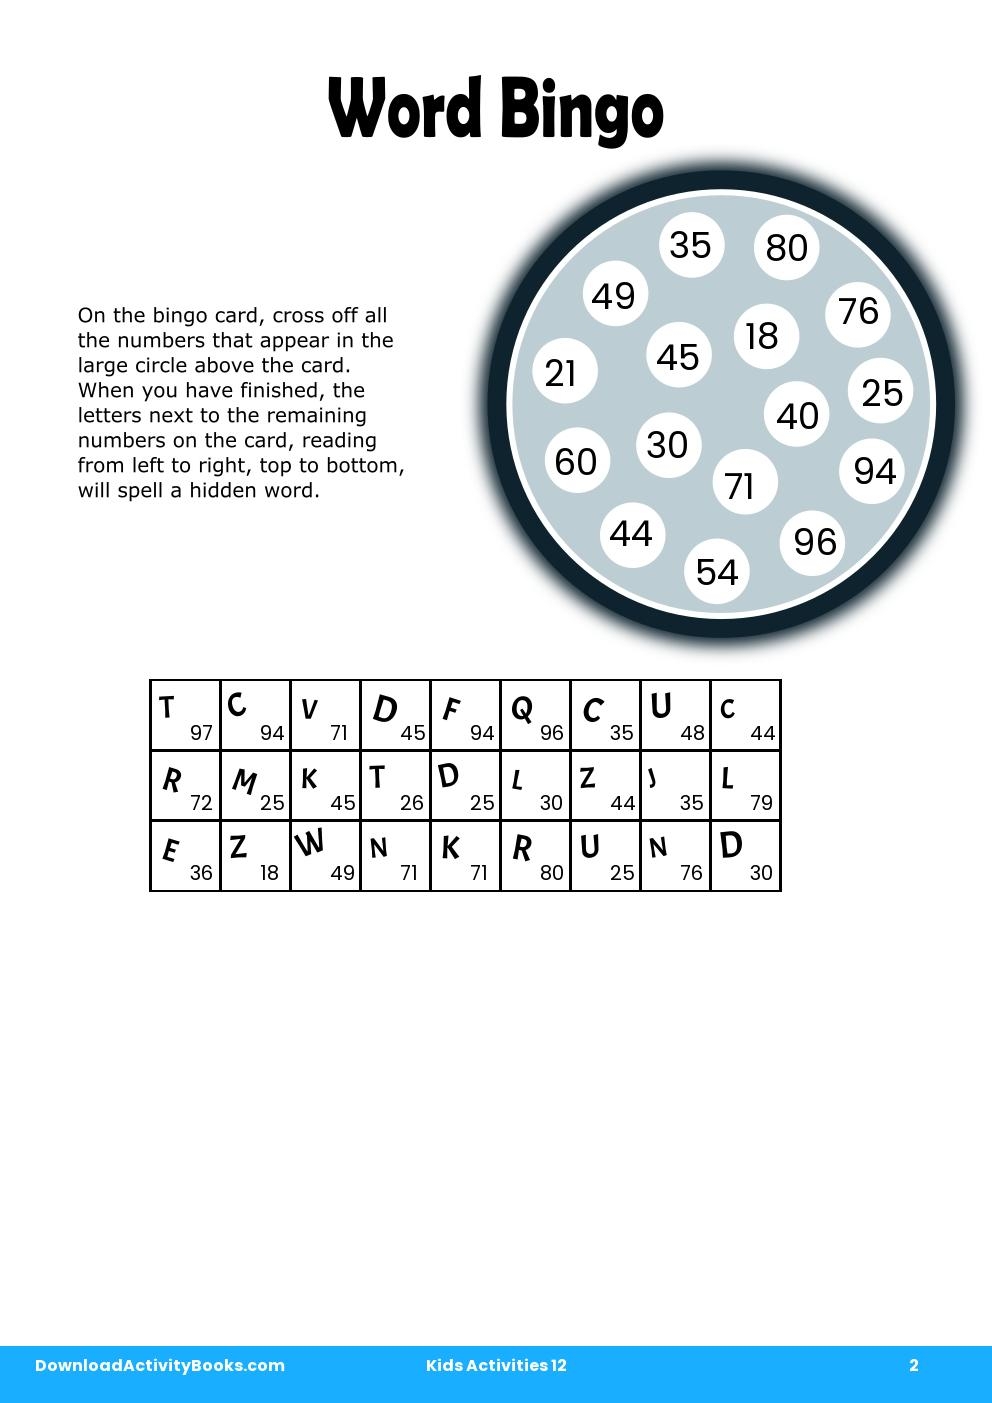 Word Bingo in Kids Activities 12